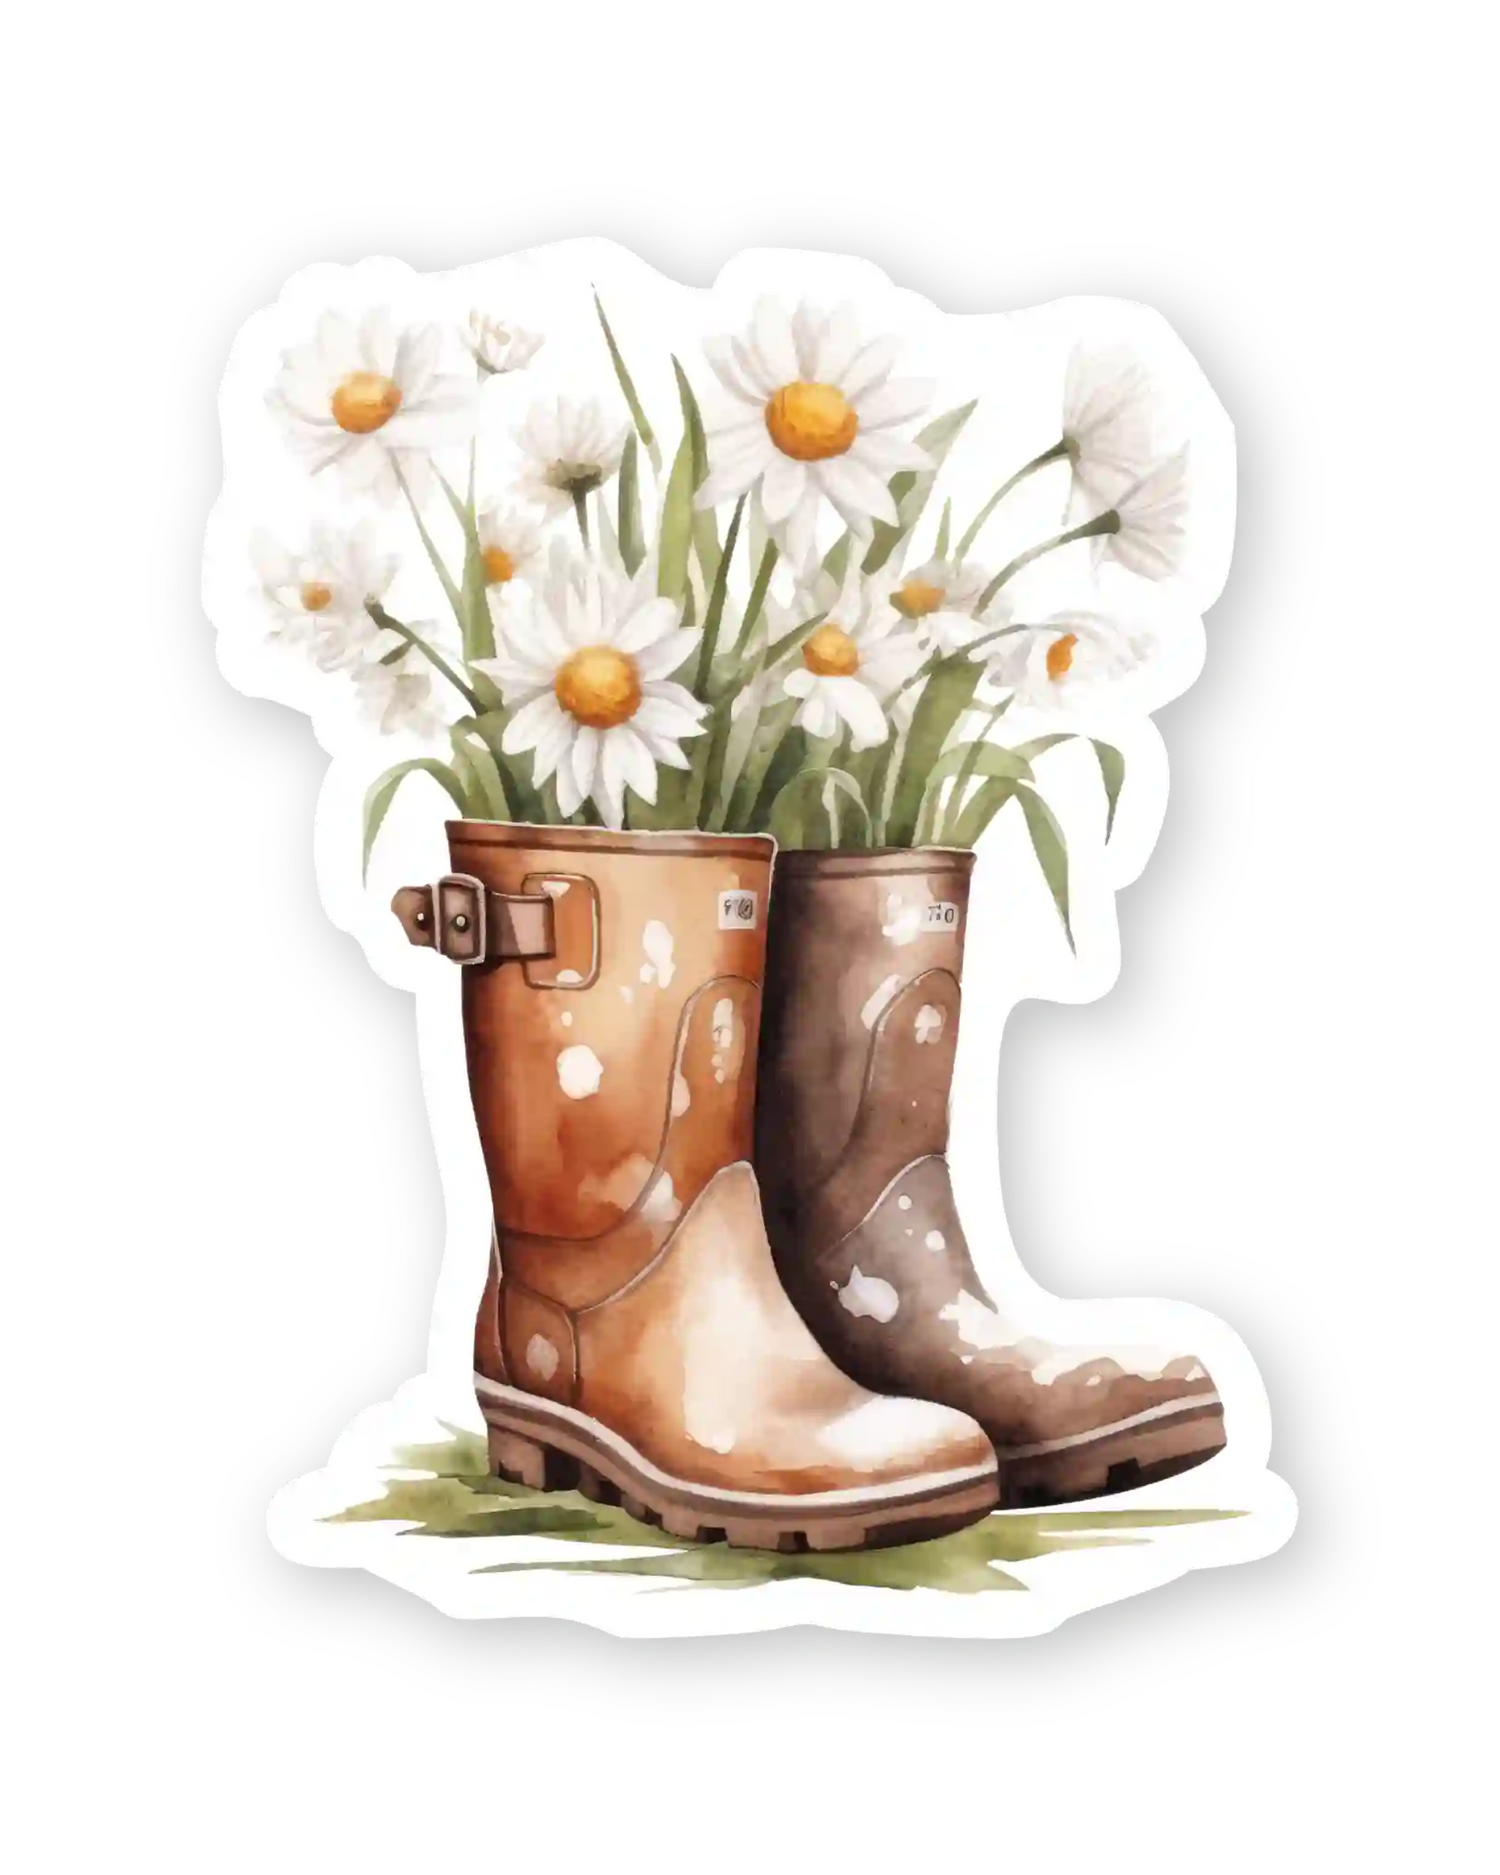 Naljepnice za planer The Daisy Patch ilustracije detalj čizme sa cvijećem